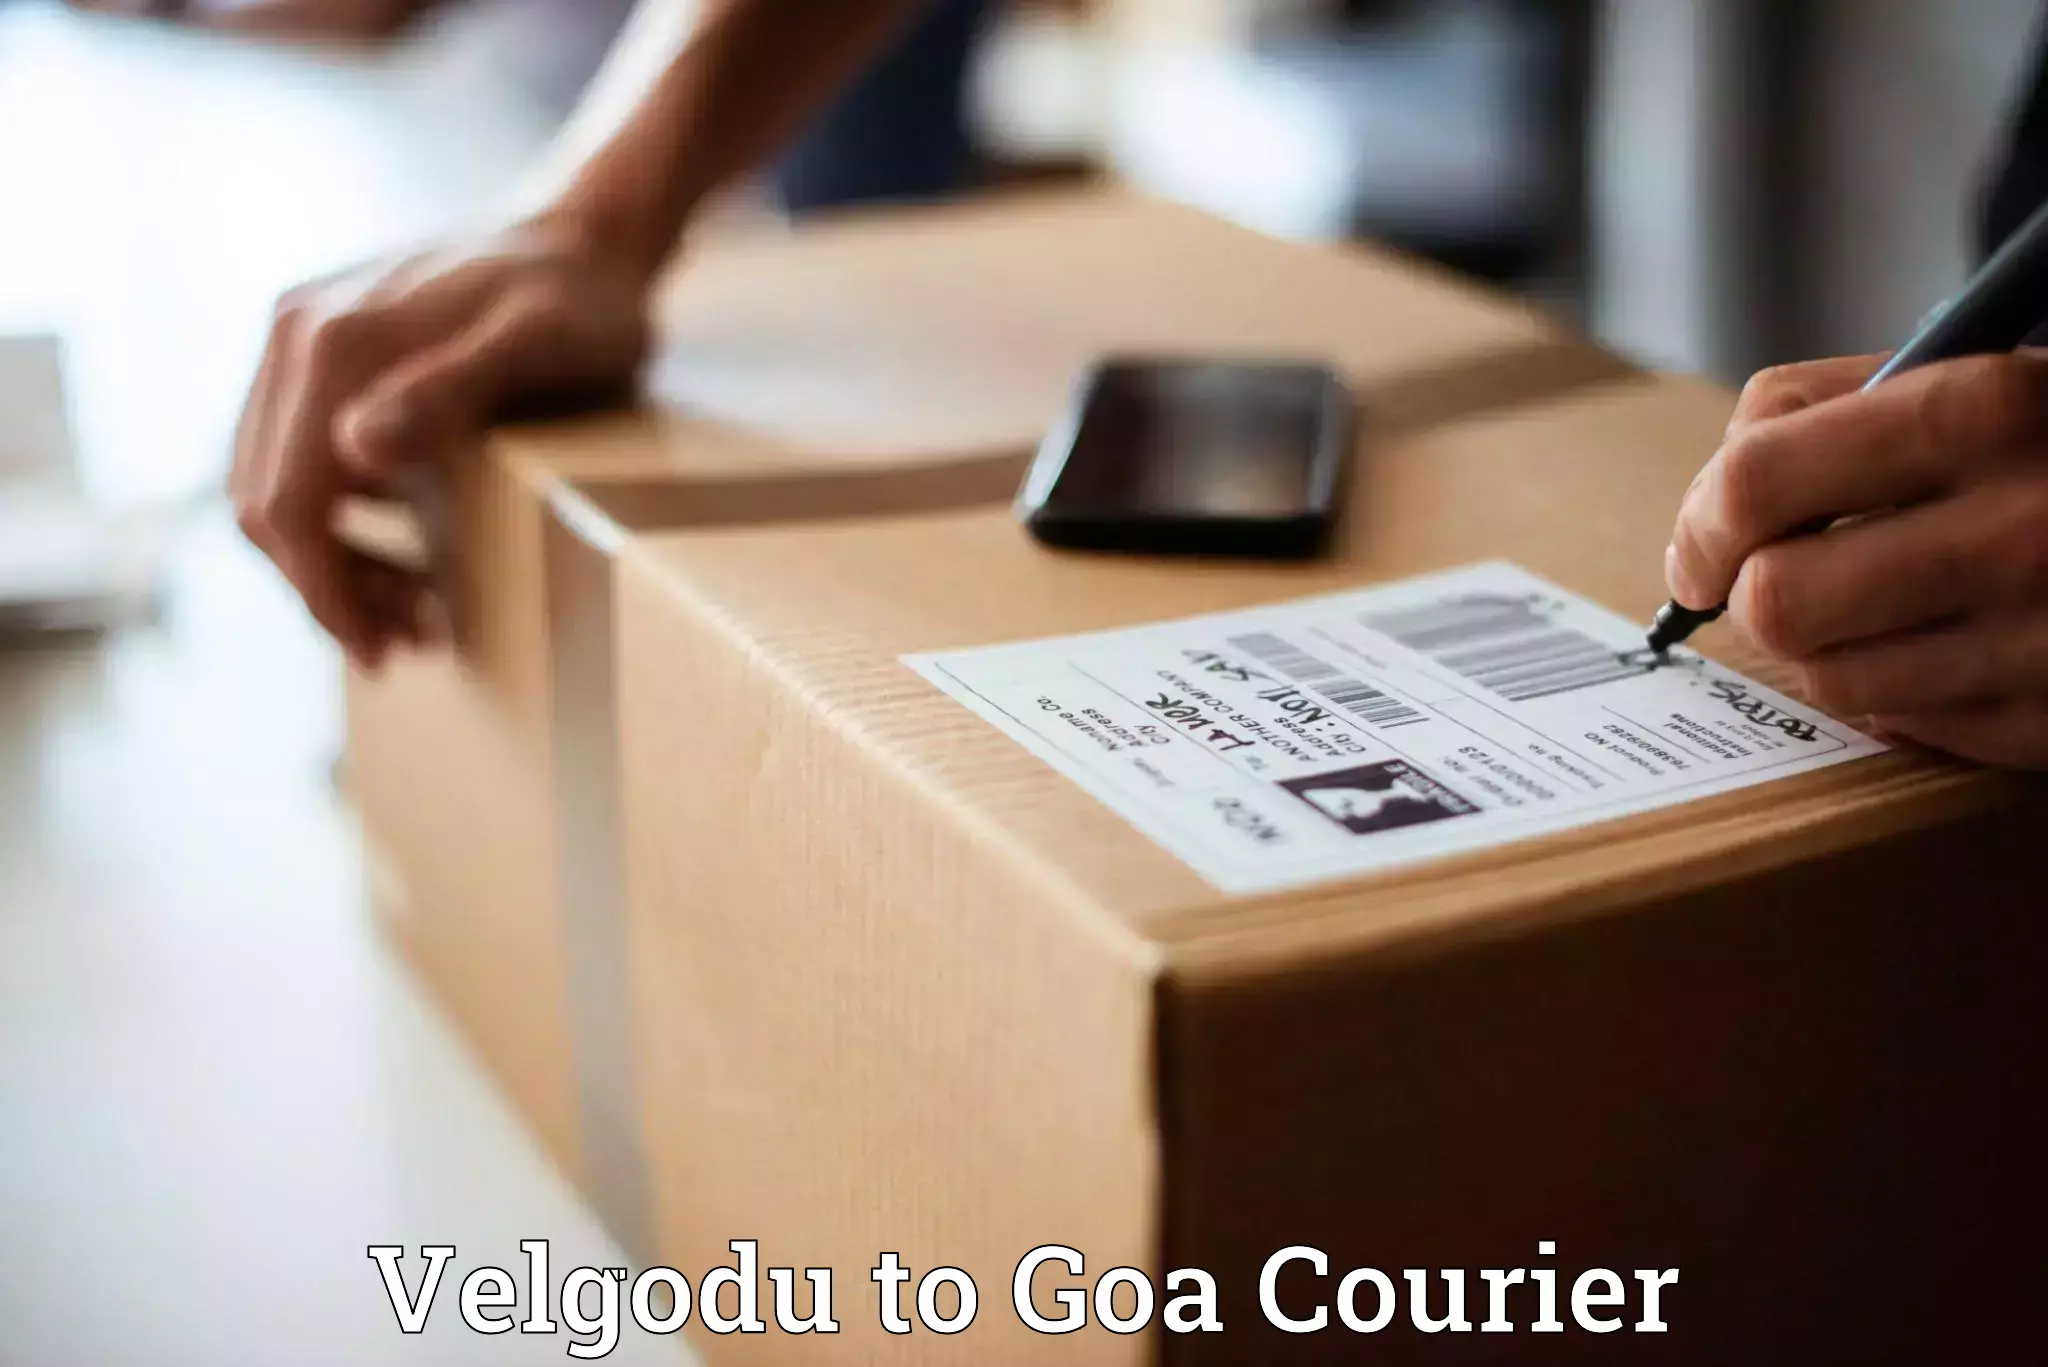 Logistics service provider Velgodu to Goa